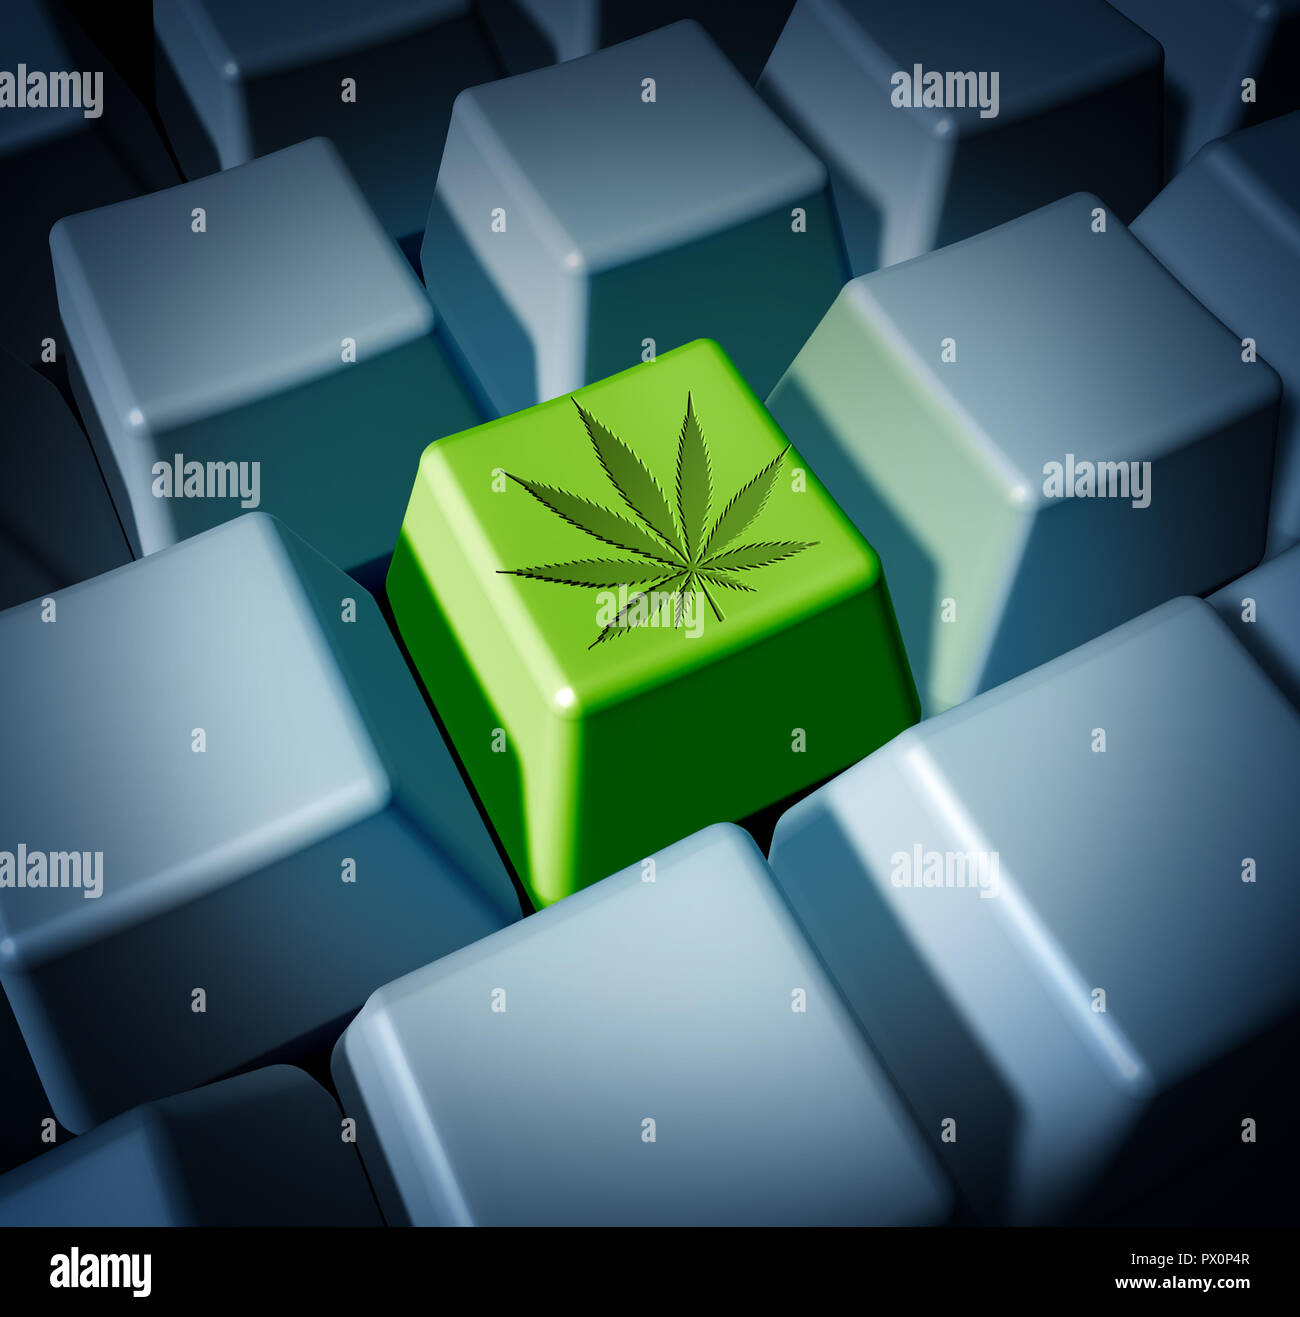 Compra online de cannabis legal de marihuana a través de comercio electrónico e internet de ventas de malezas concepto como un teclado con médicos o bote de recreo. Foto de stock